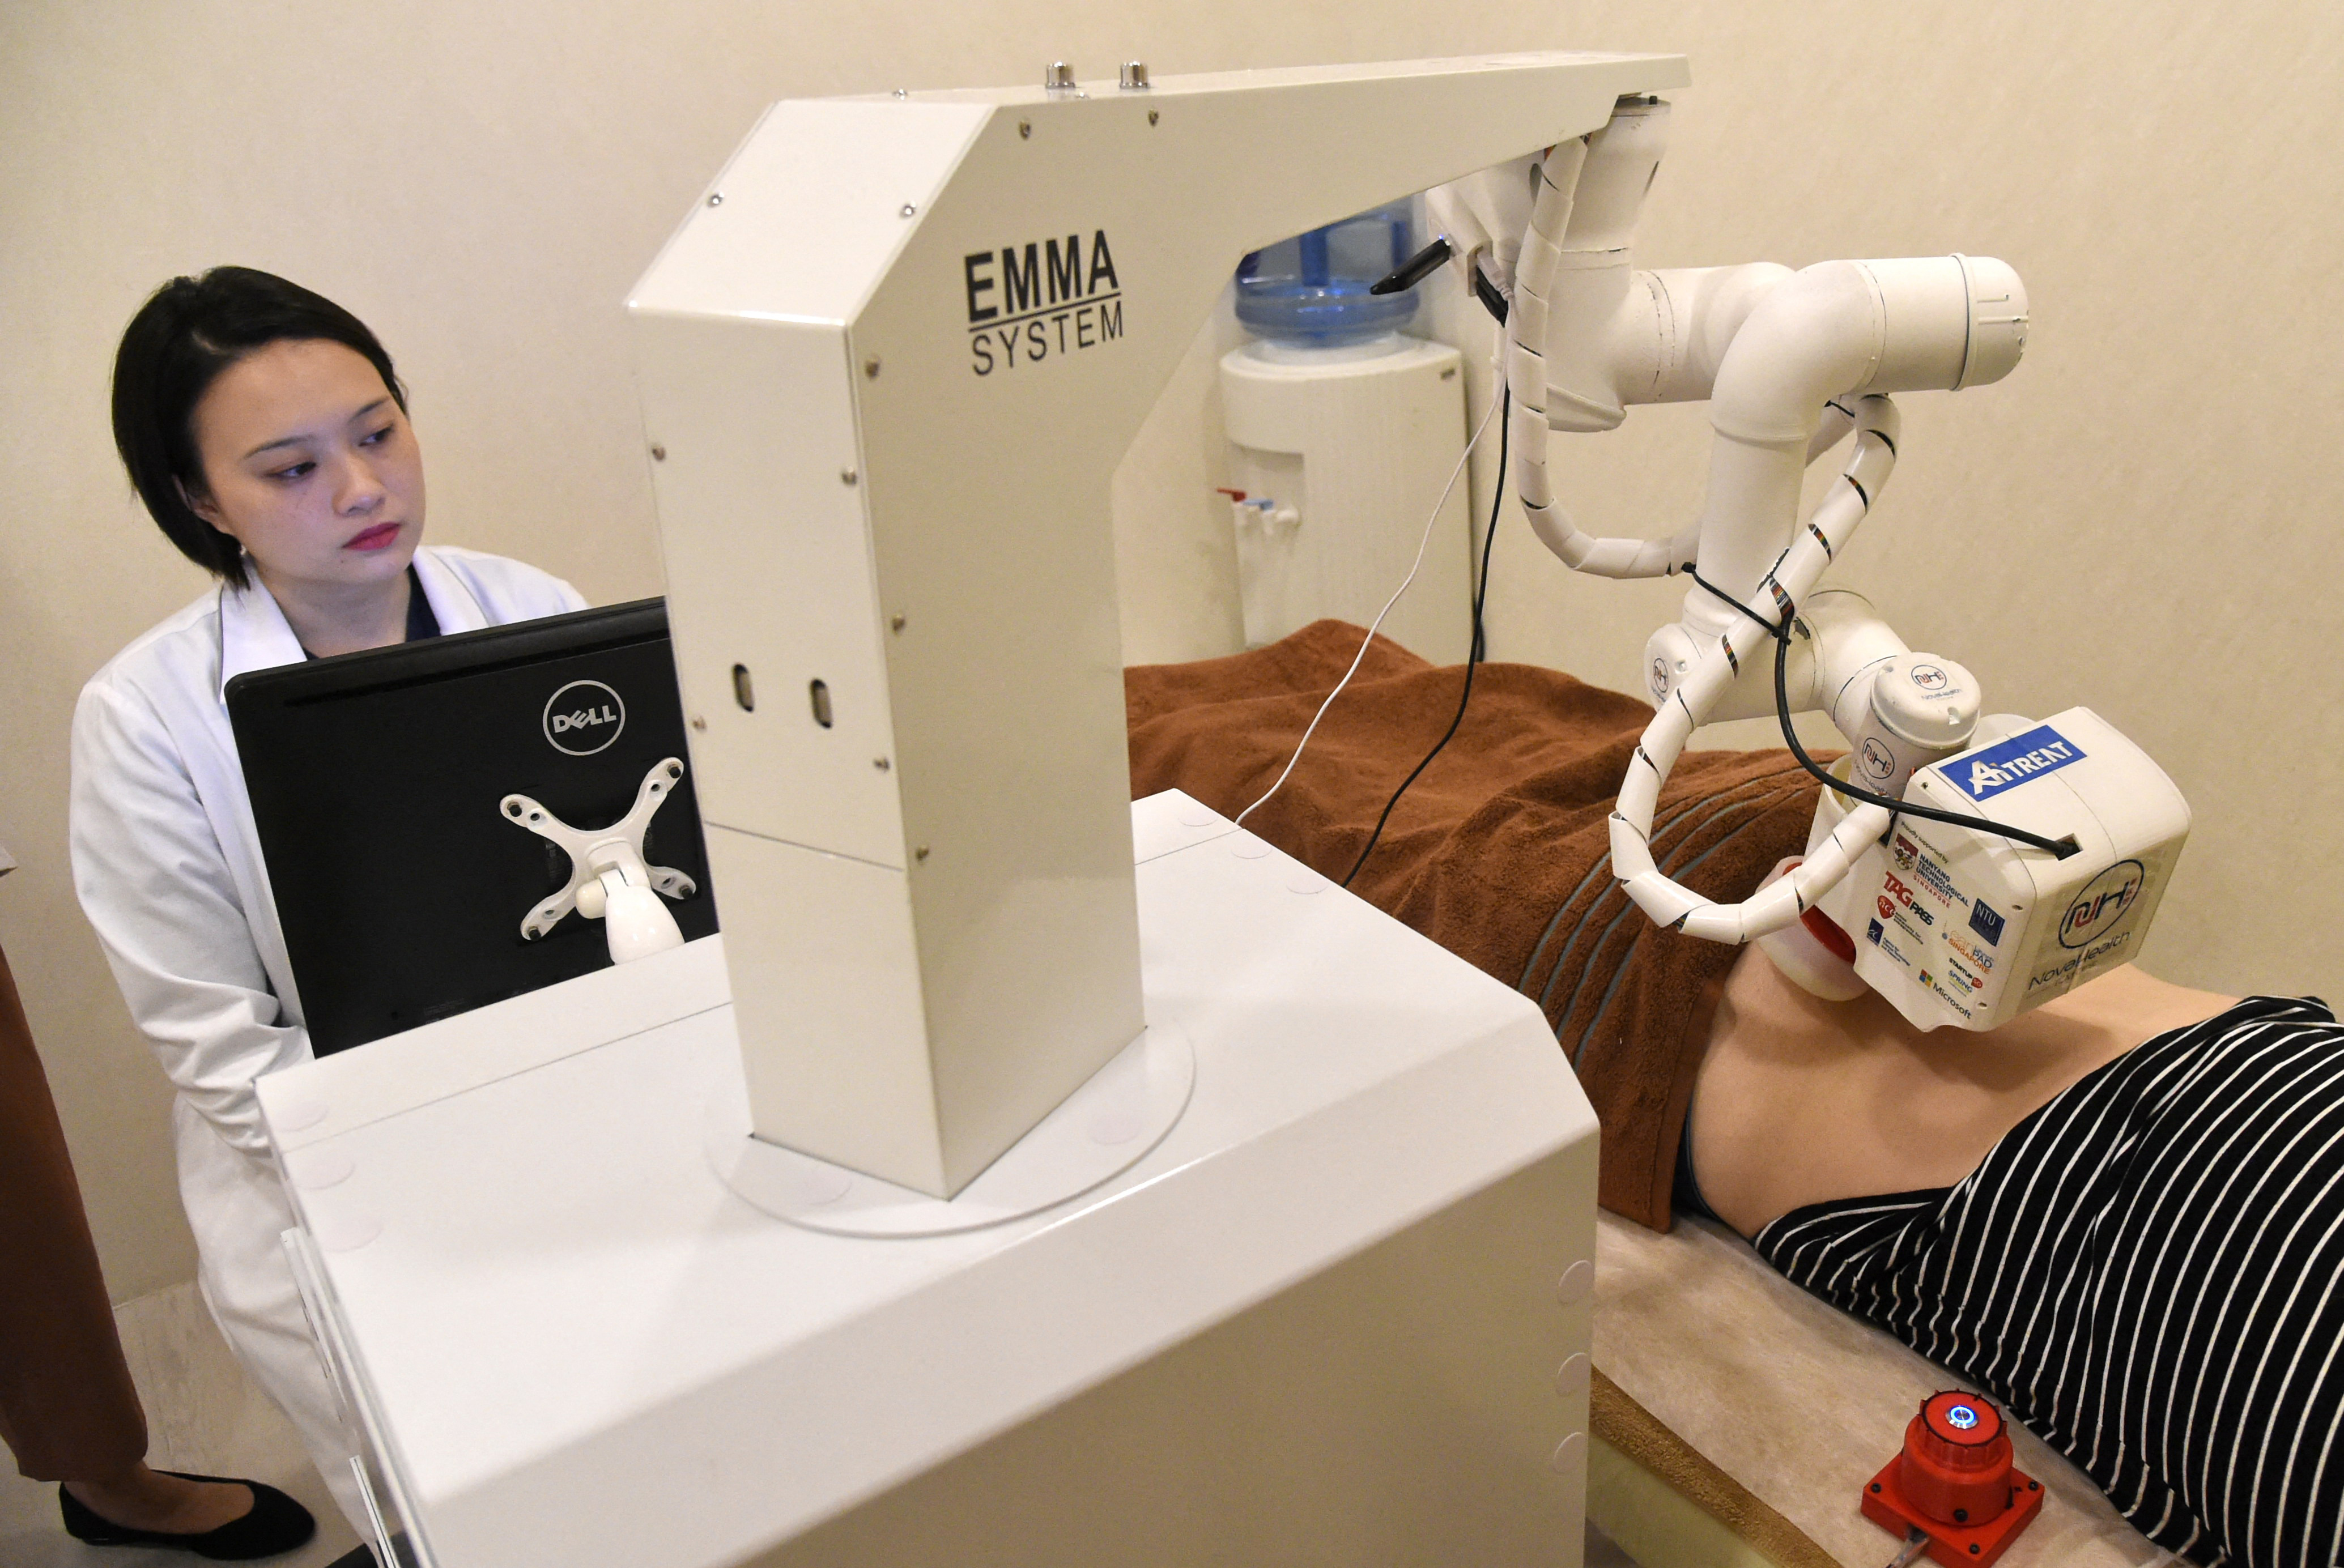 Itt van EMMA, a hagyományos kínai robotmasszőr